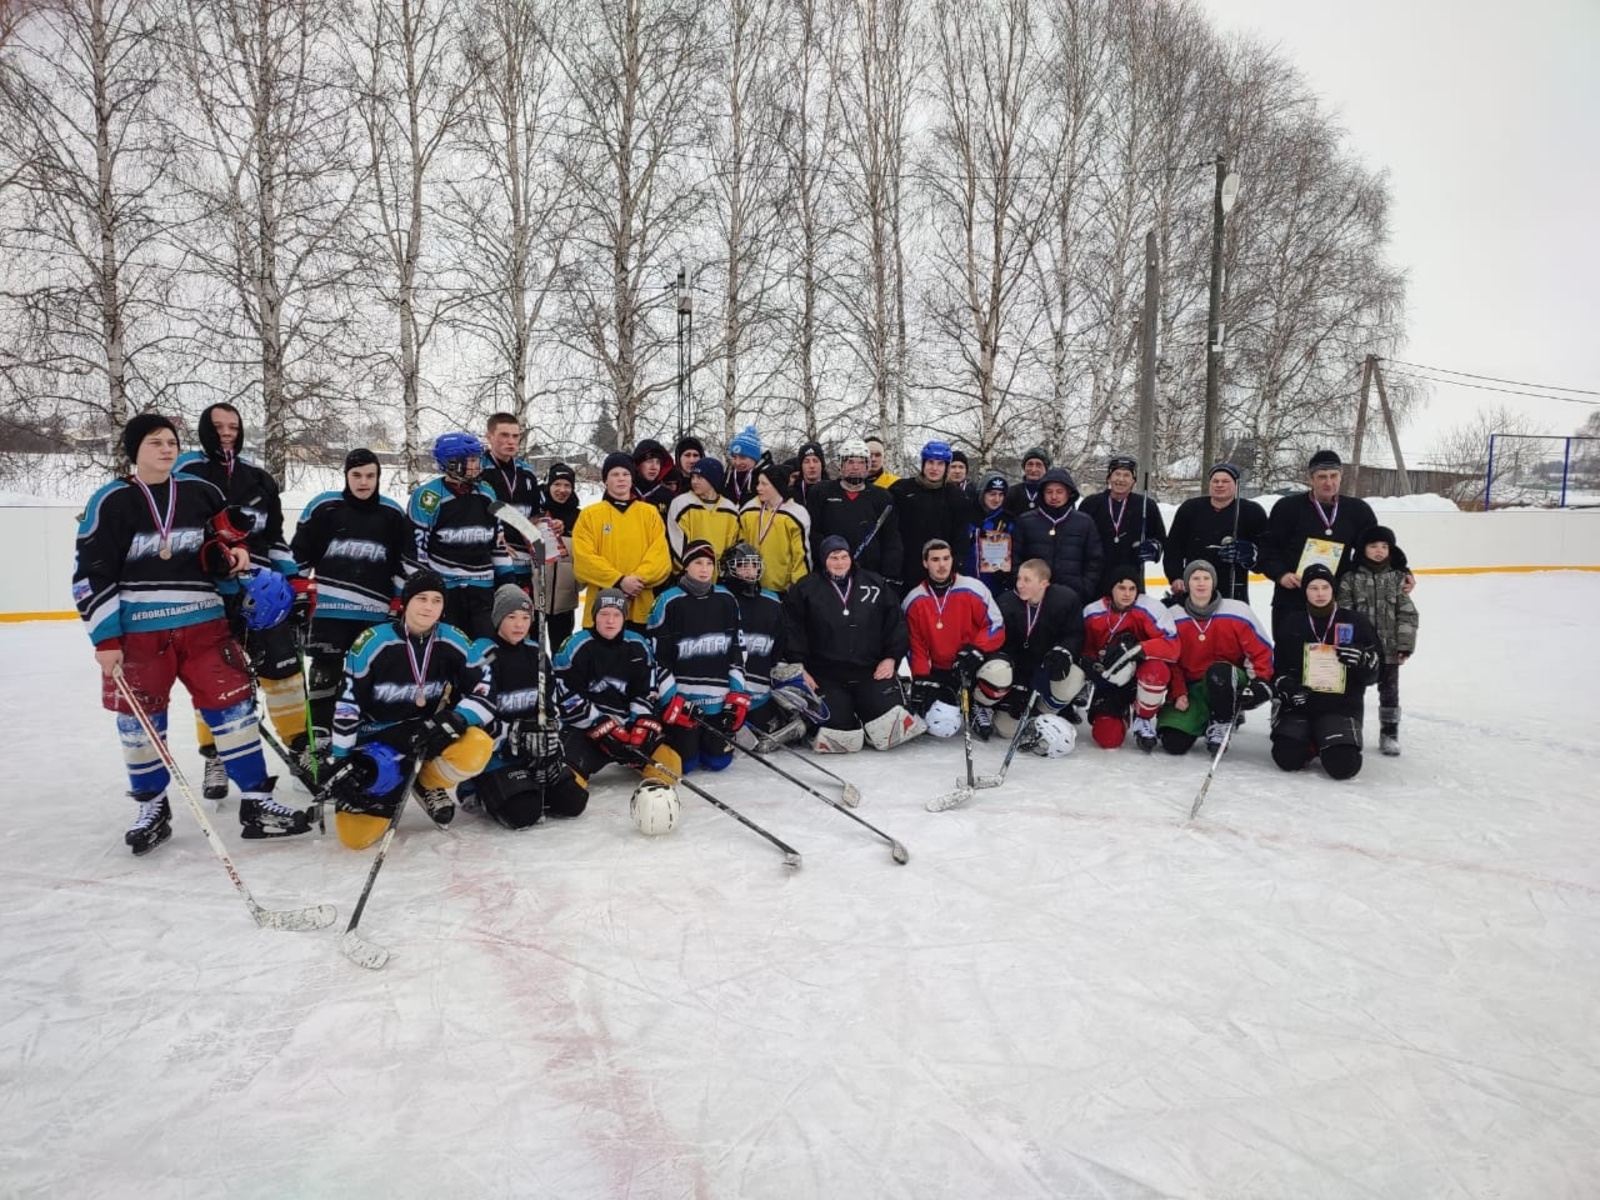 Сегодня в Дуване состоялся хоккейный турнир среди команд Дуванского и Белокатайского районов